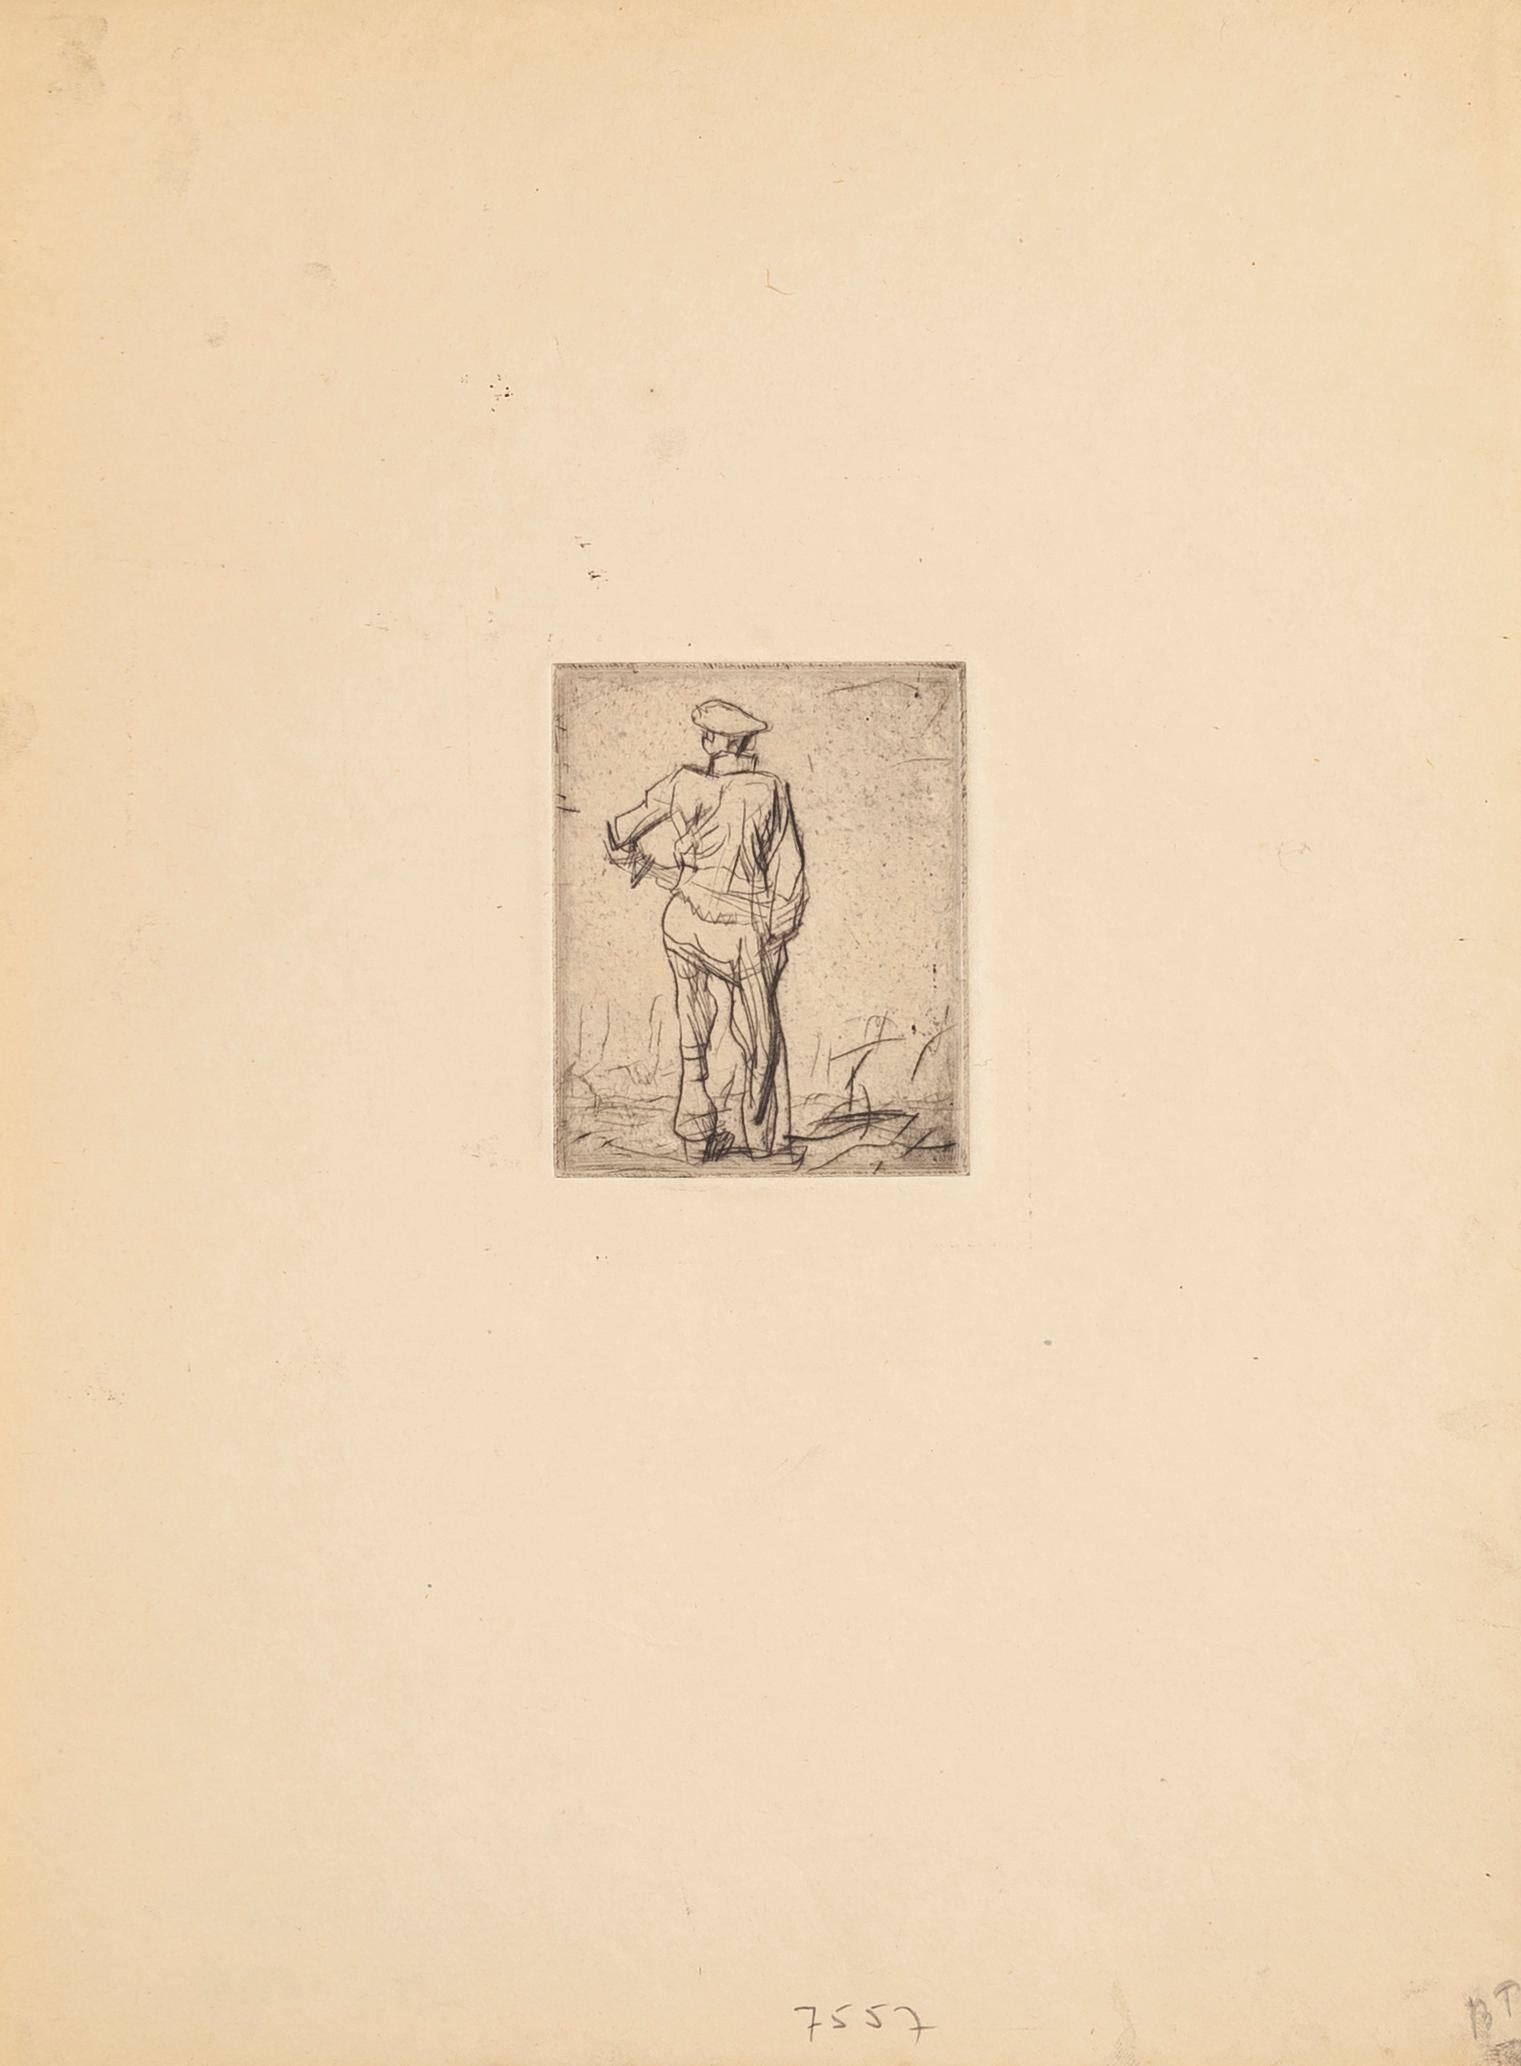 Worker - Etching by F. Brangwyn - Mid 20th Century - Print by Sir Frank Brangwyn